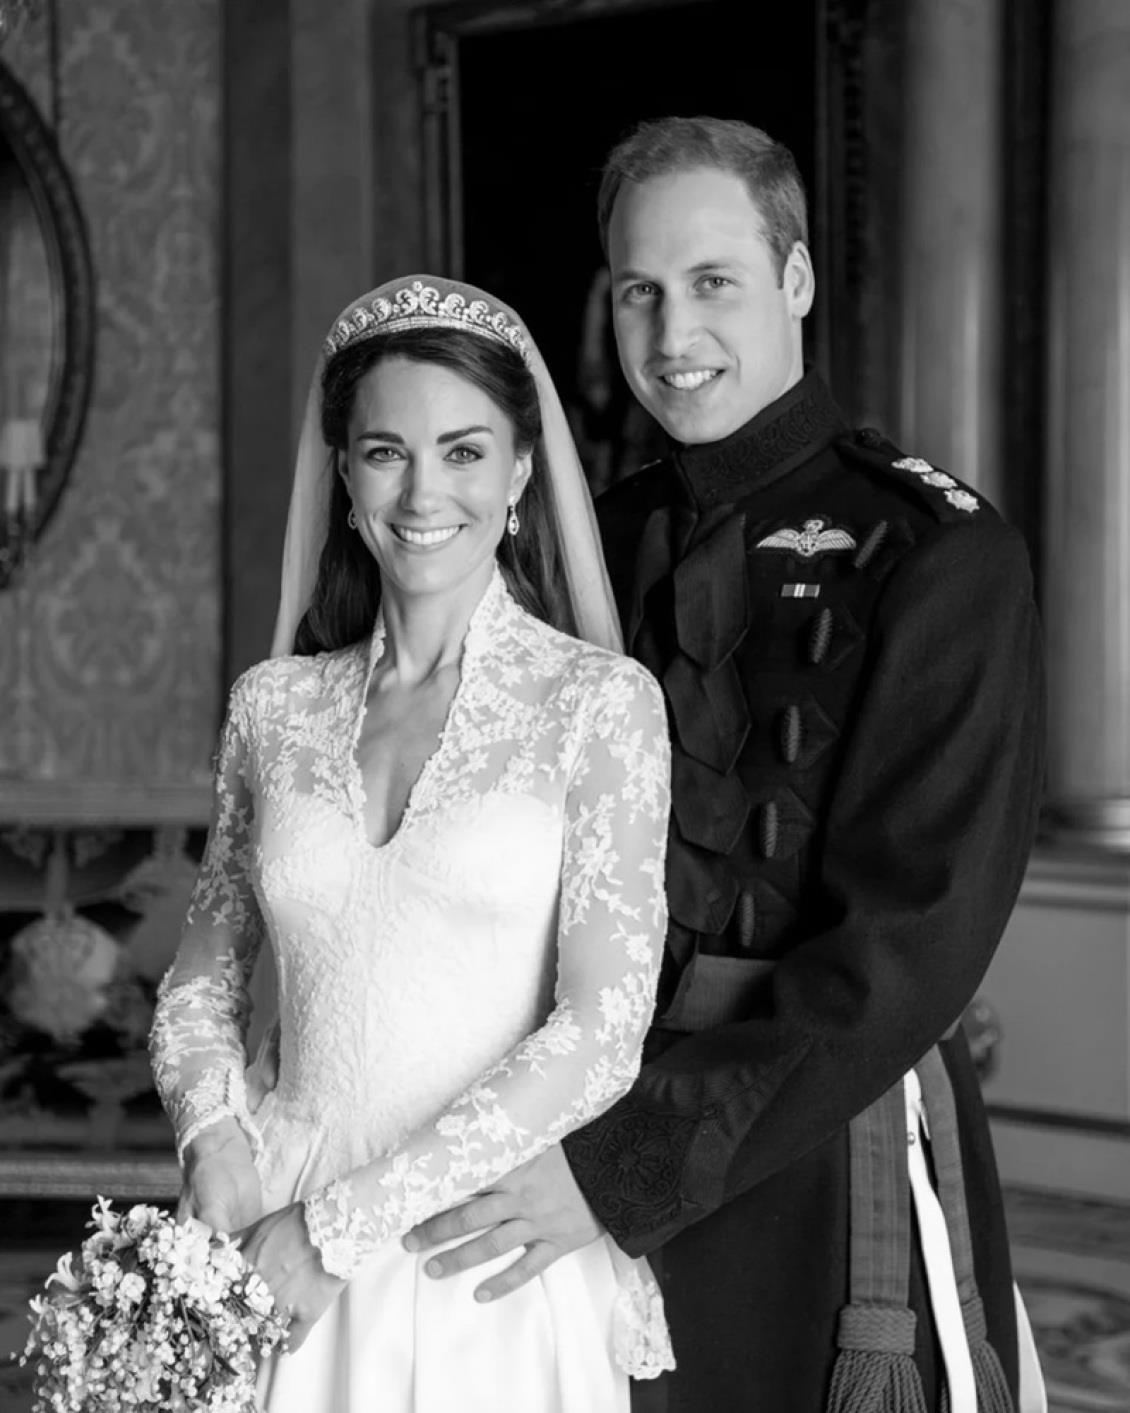 πρίγκιπας γουίλιαμ και κέιτ μίντλετον: η άγνωστη φωτογραφία από τον γάμο τους - αφορμή η 13η επέτειός τους